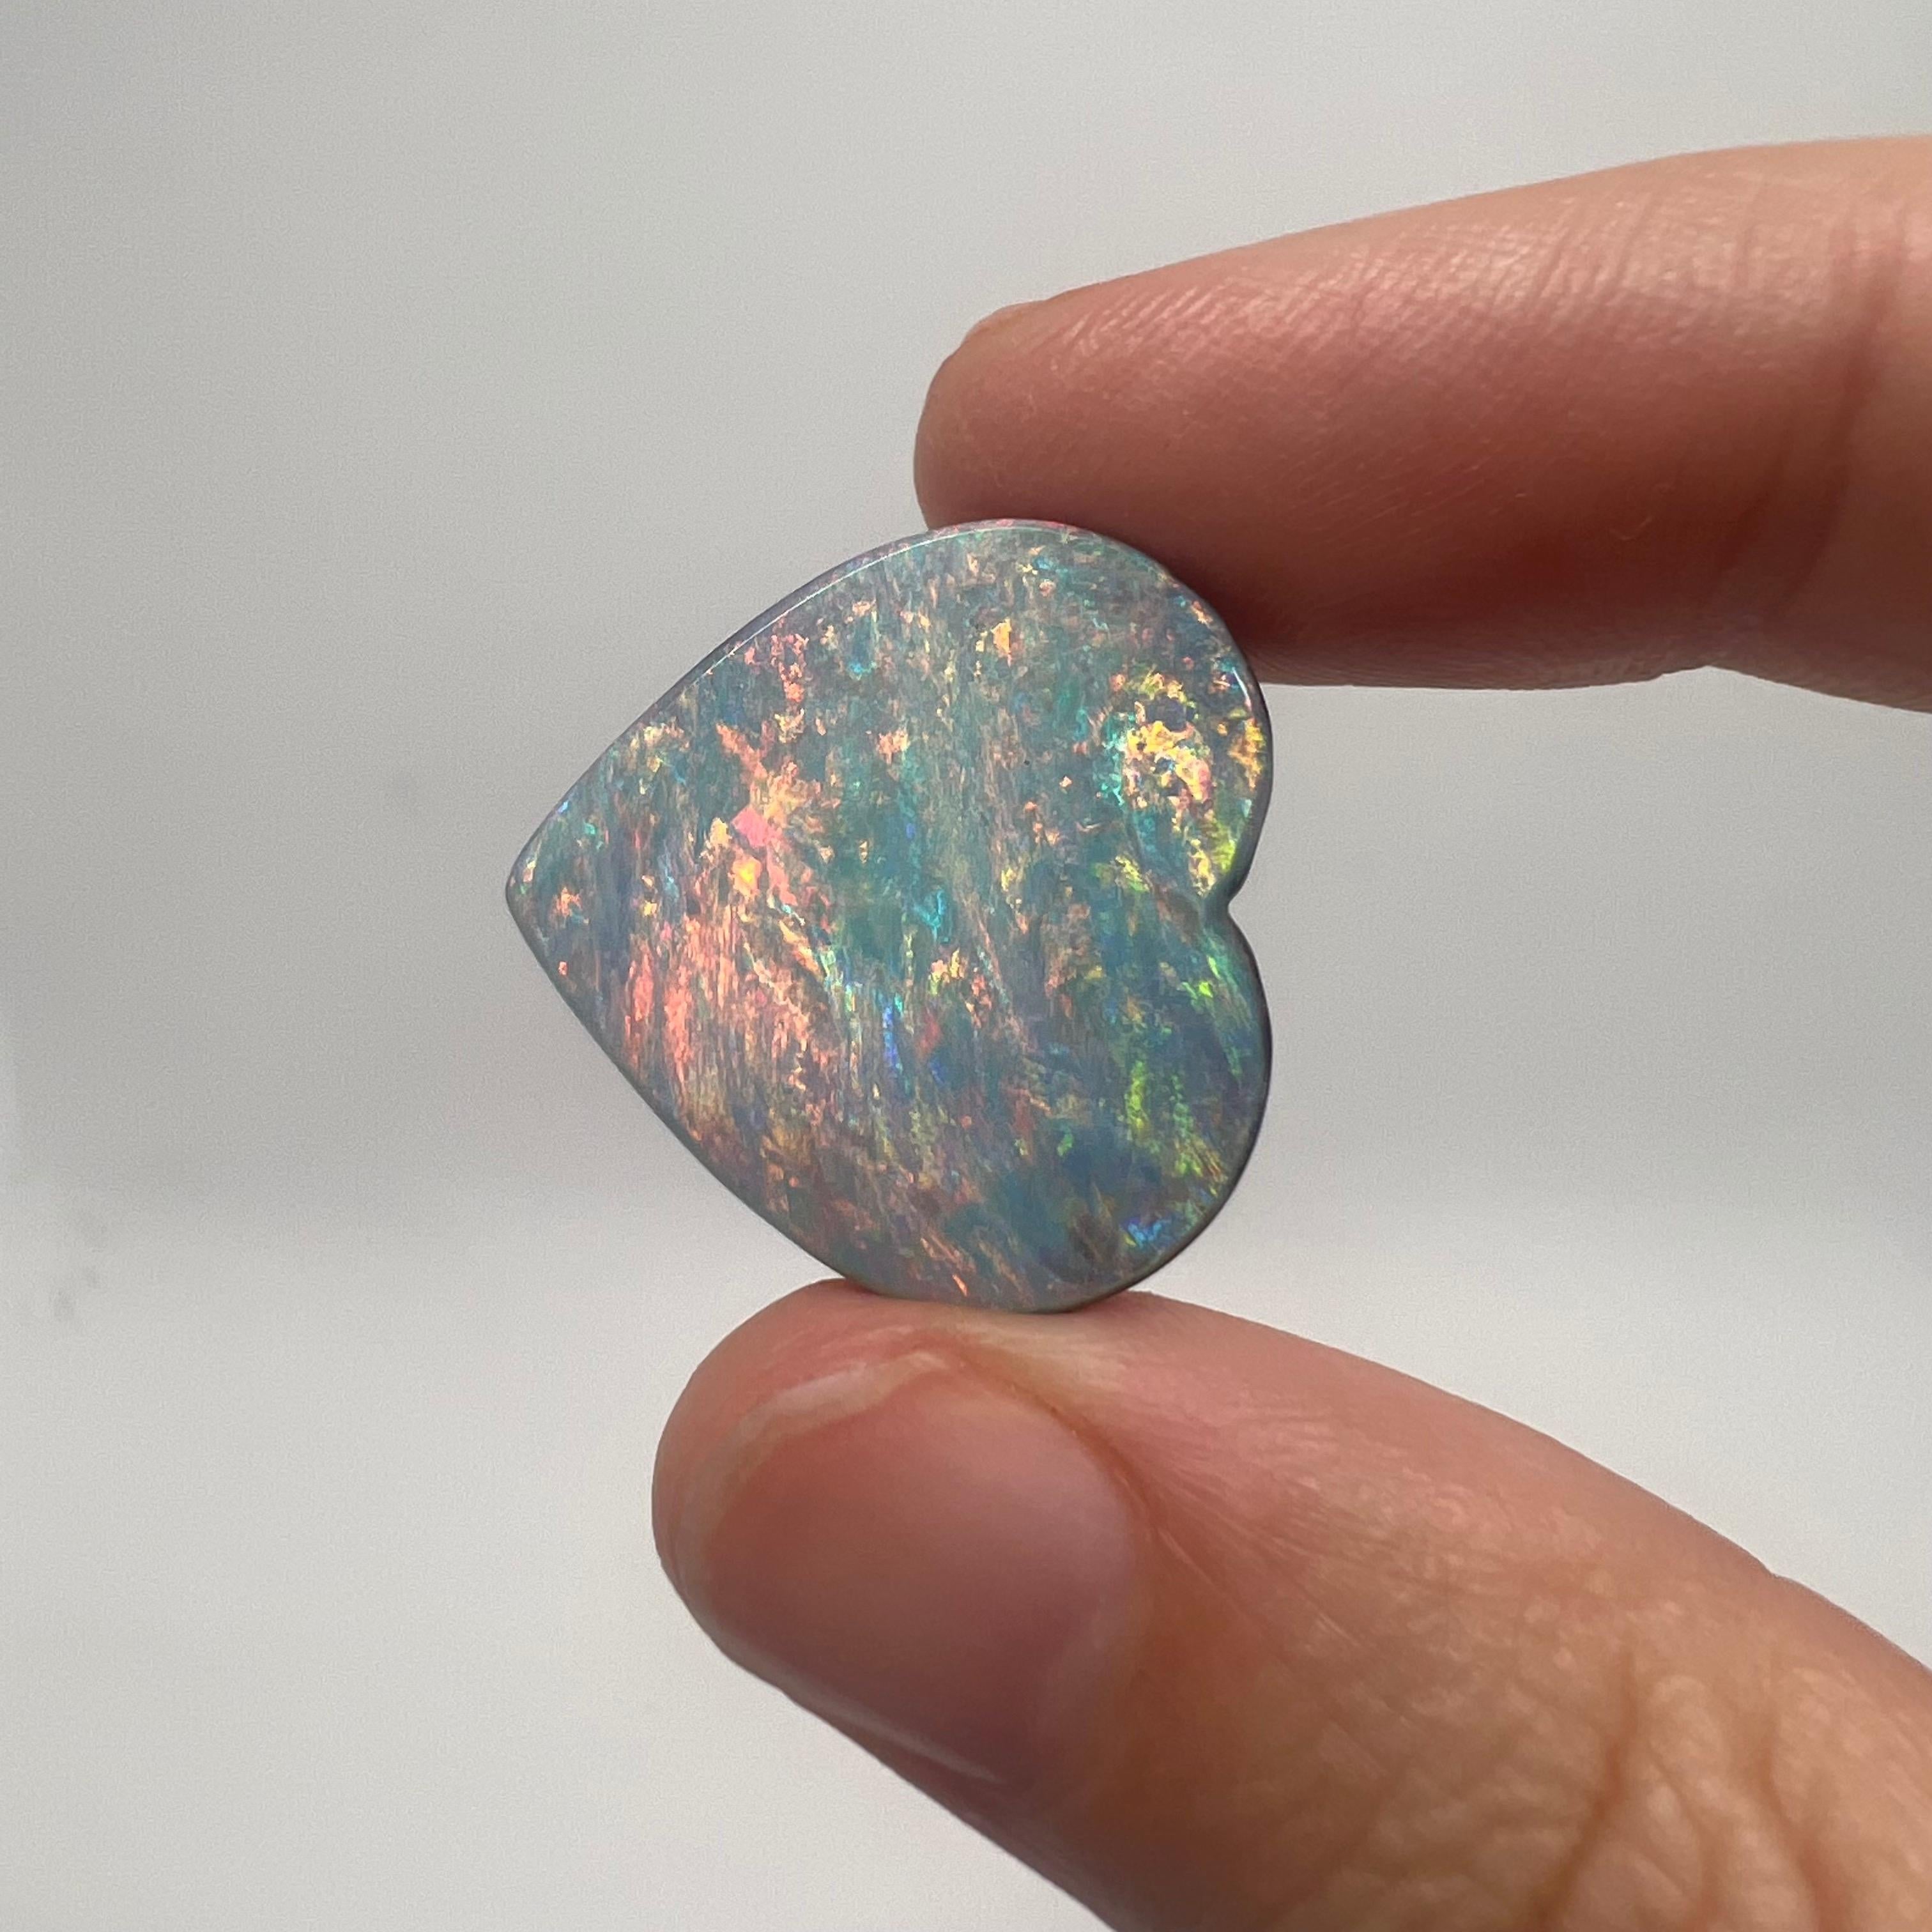 Cette grande opale australienne massive naturelle a été extraite dans l'ouest du Queensland, en Australie, par une mineuse d'opale. Il est de qualité gemme et sa forme de cœur en fait une pièce très recherchée. Ses couleurs sont toutes vives et